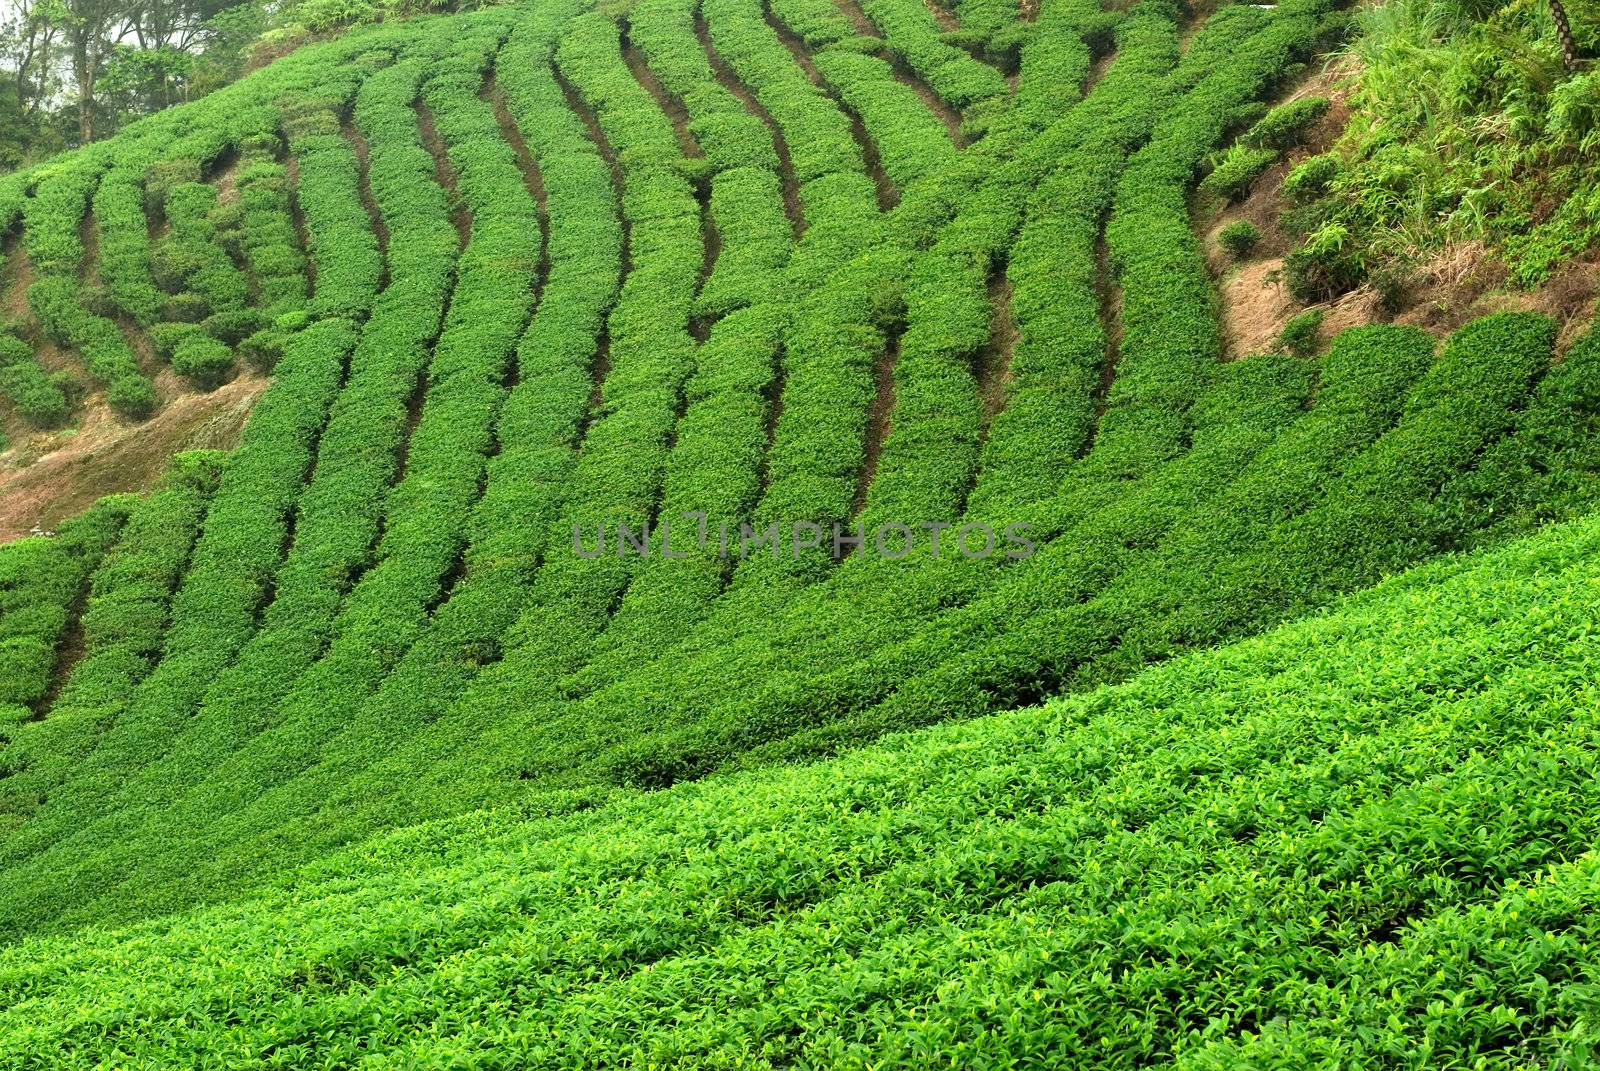 It is a green fresh tea leaf farm.